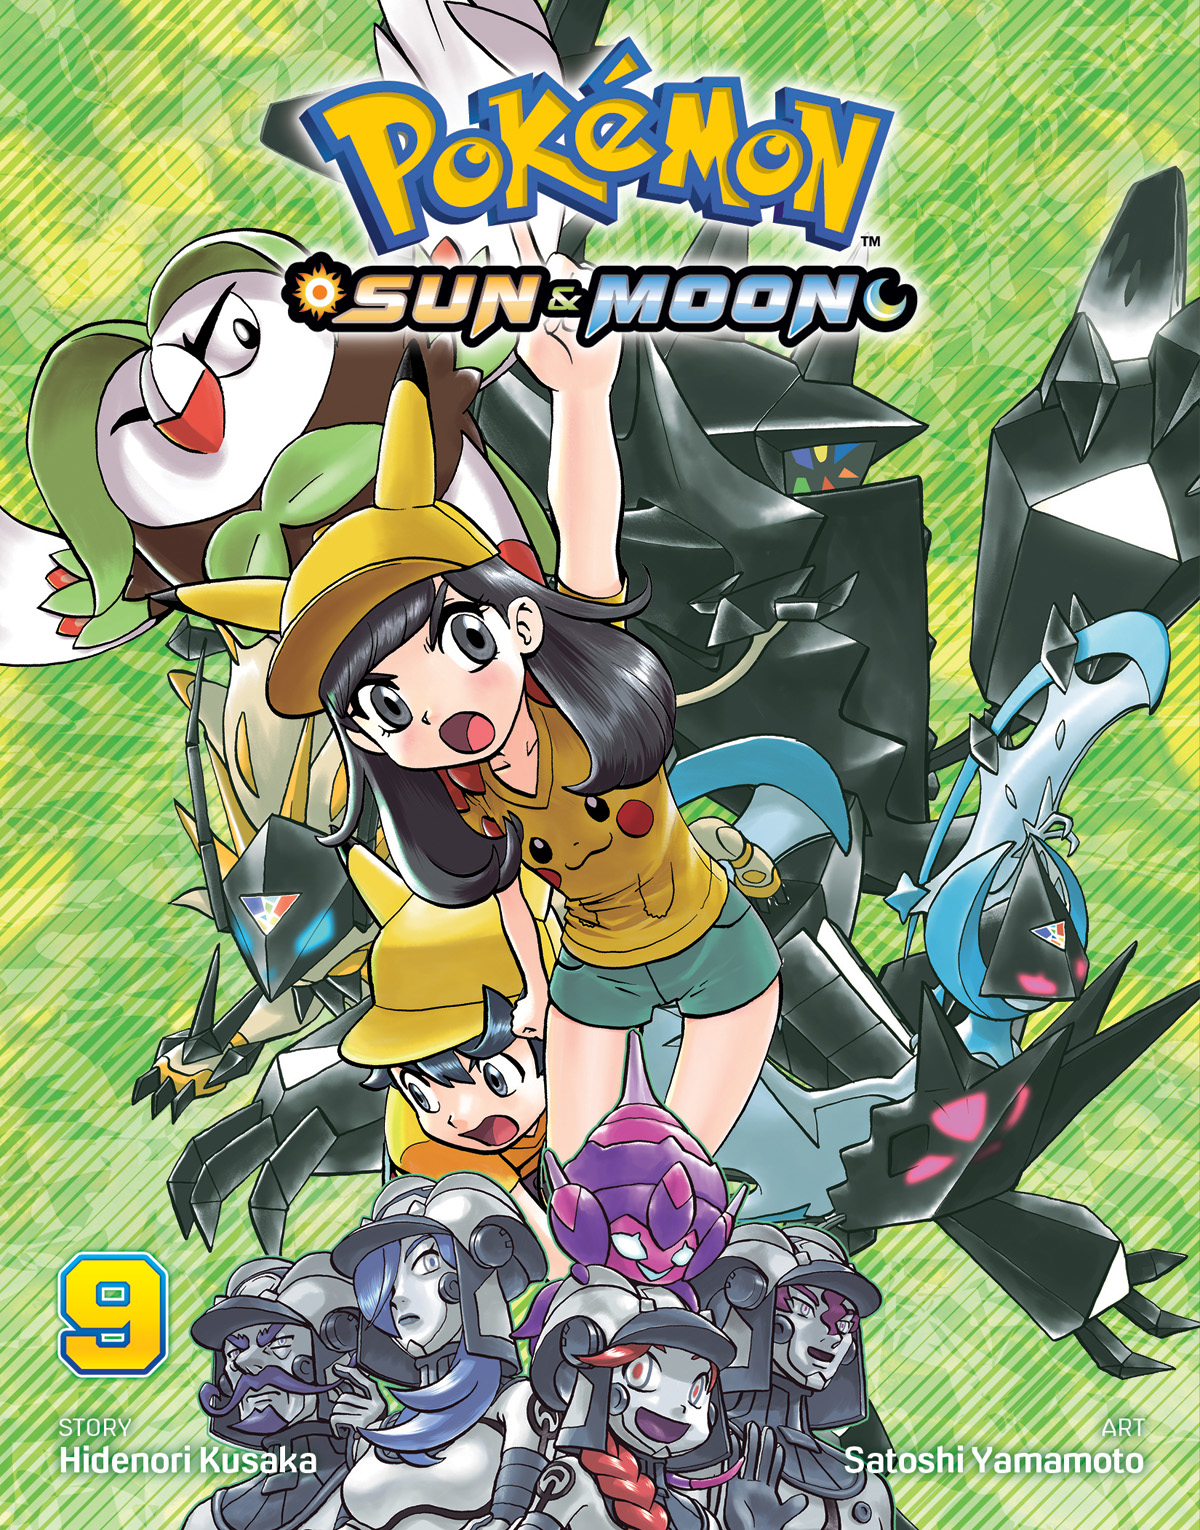 Pokémon Sun & Moon Manga Volume 9